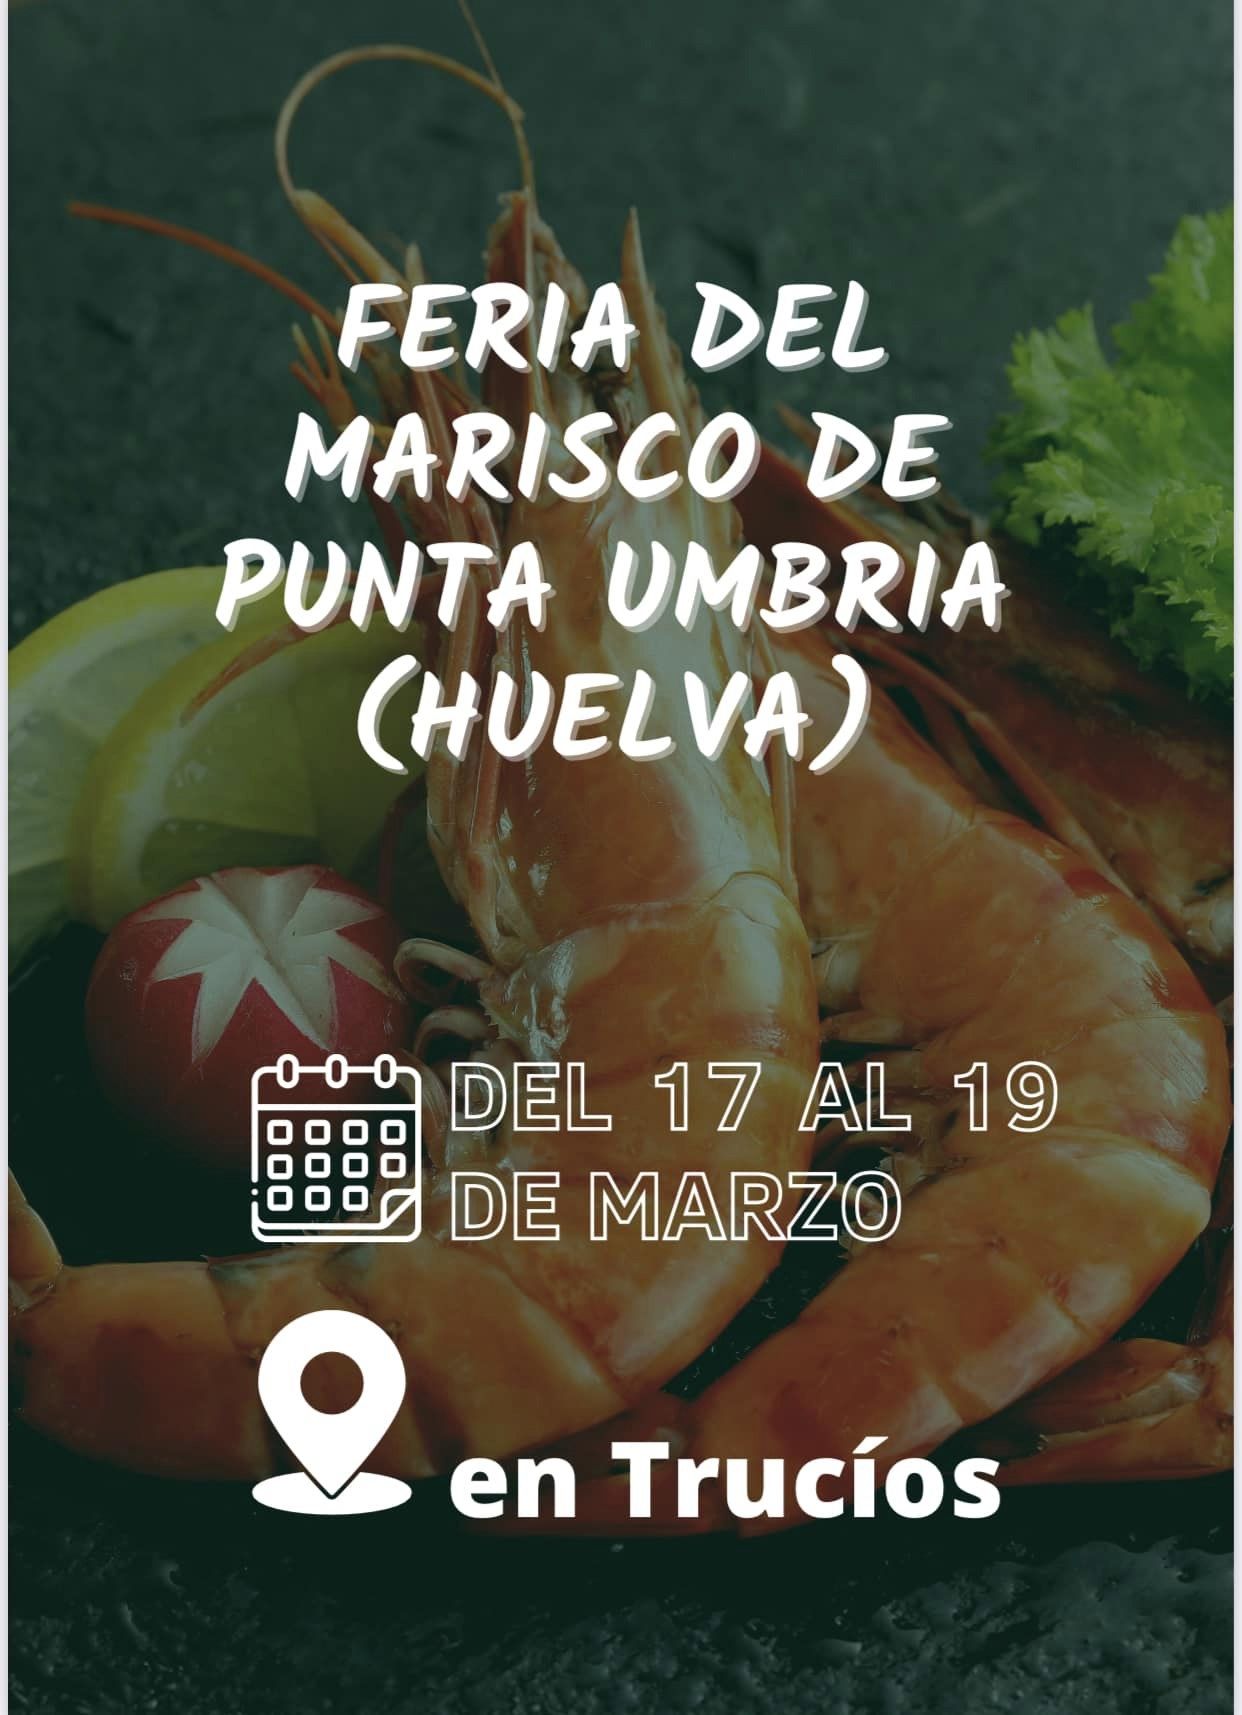 El Ayuntamiento estará presente en la 'Feria del Marisco de Punta Umbría' que se celebrará este fin de semana en la localidad vicaína de Trucíos 